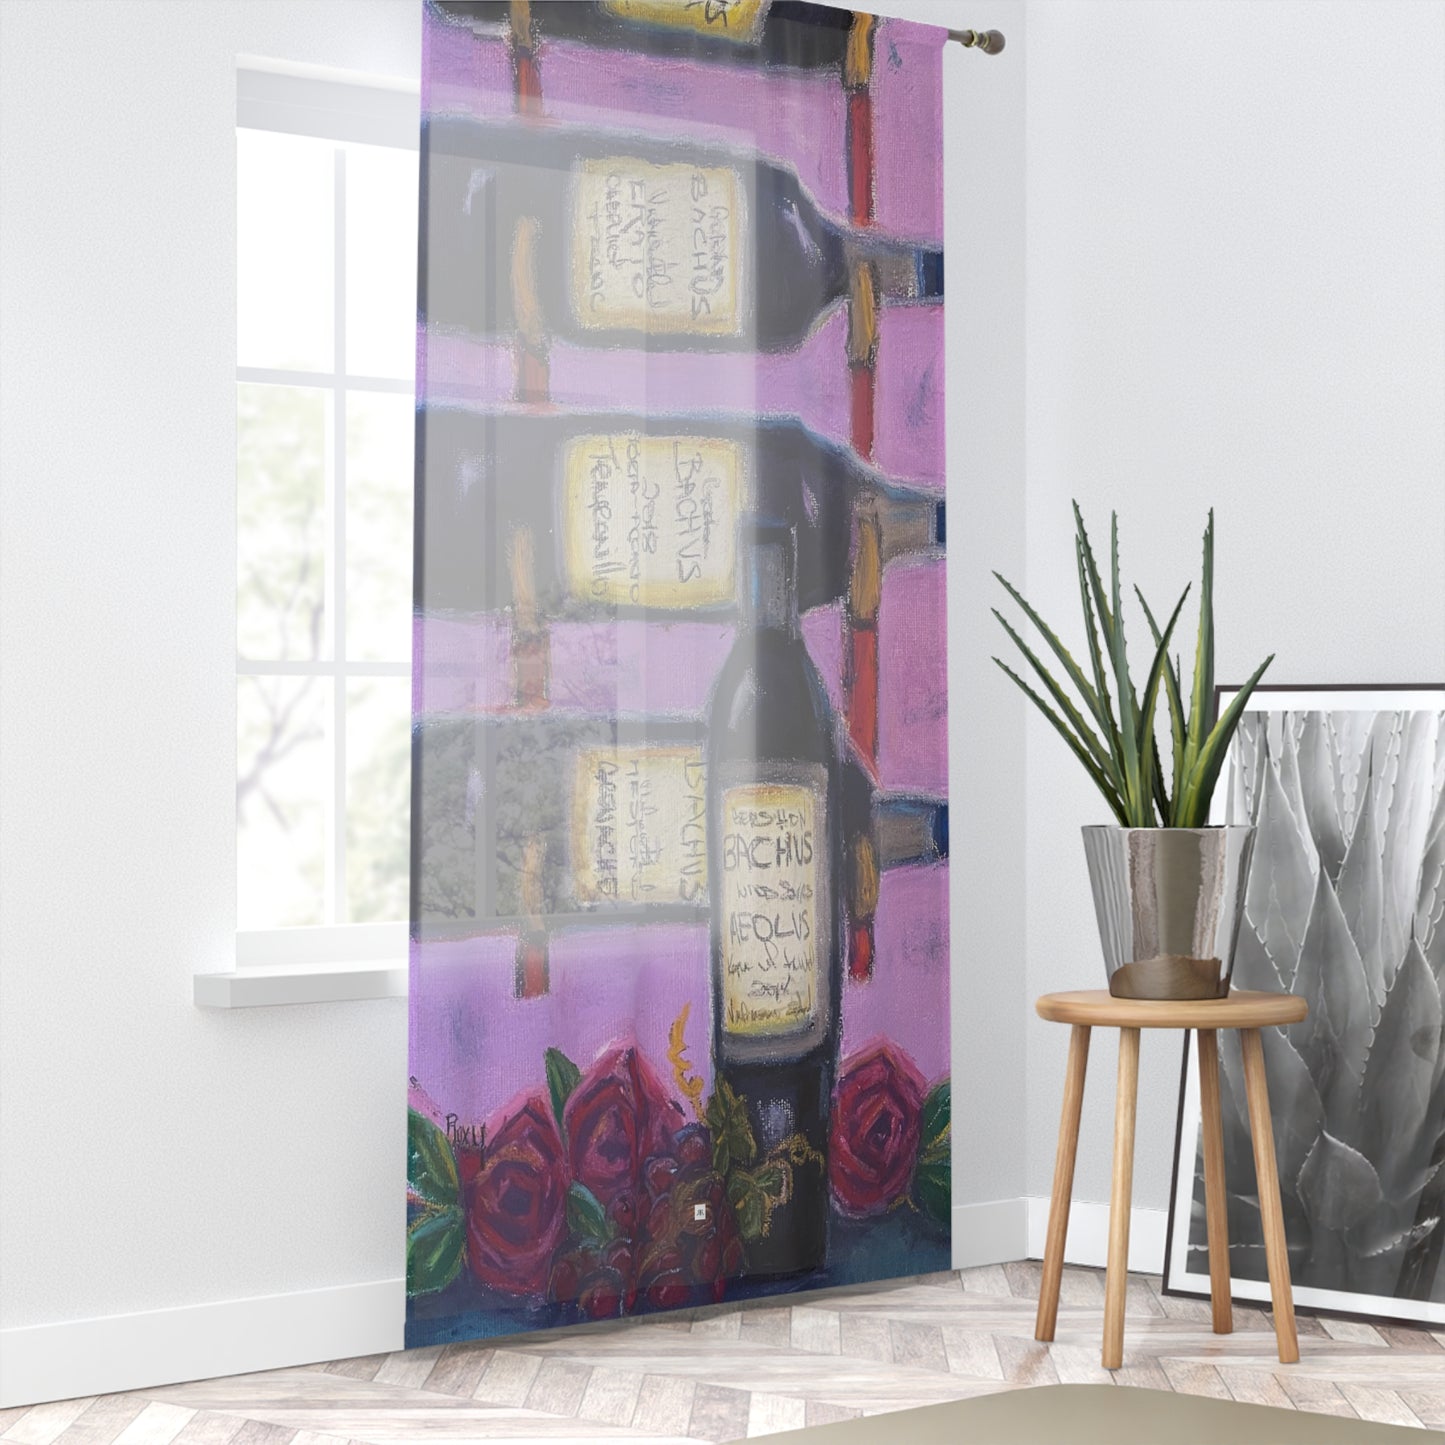 Bachus Reserves GBV Casier à vin et roses sur rideau de fenêtre transparent 213,4 x 127 cm